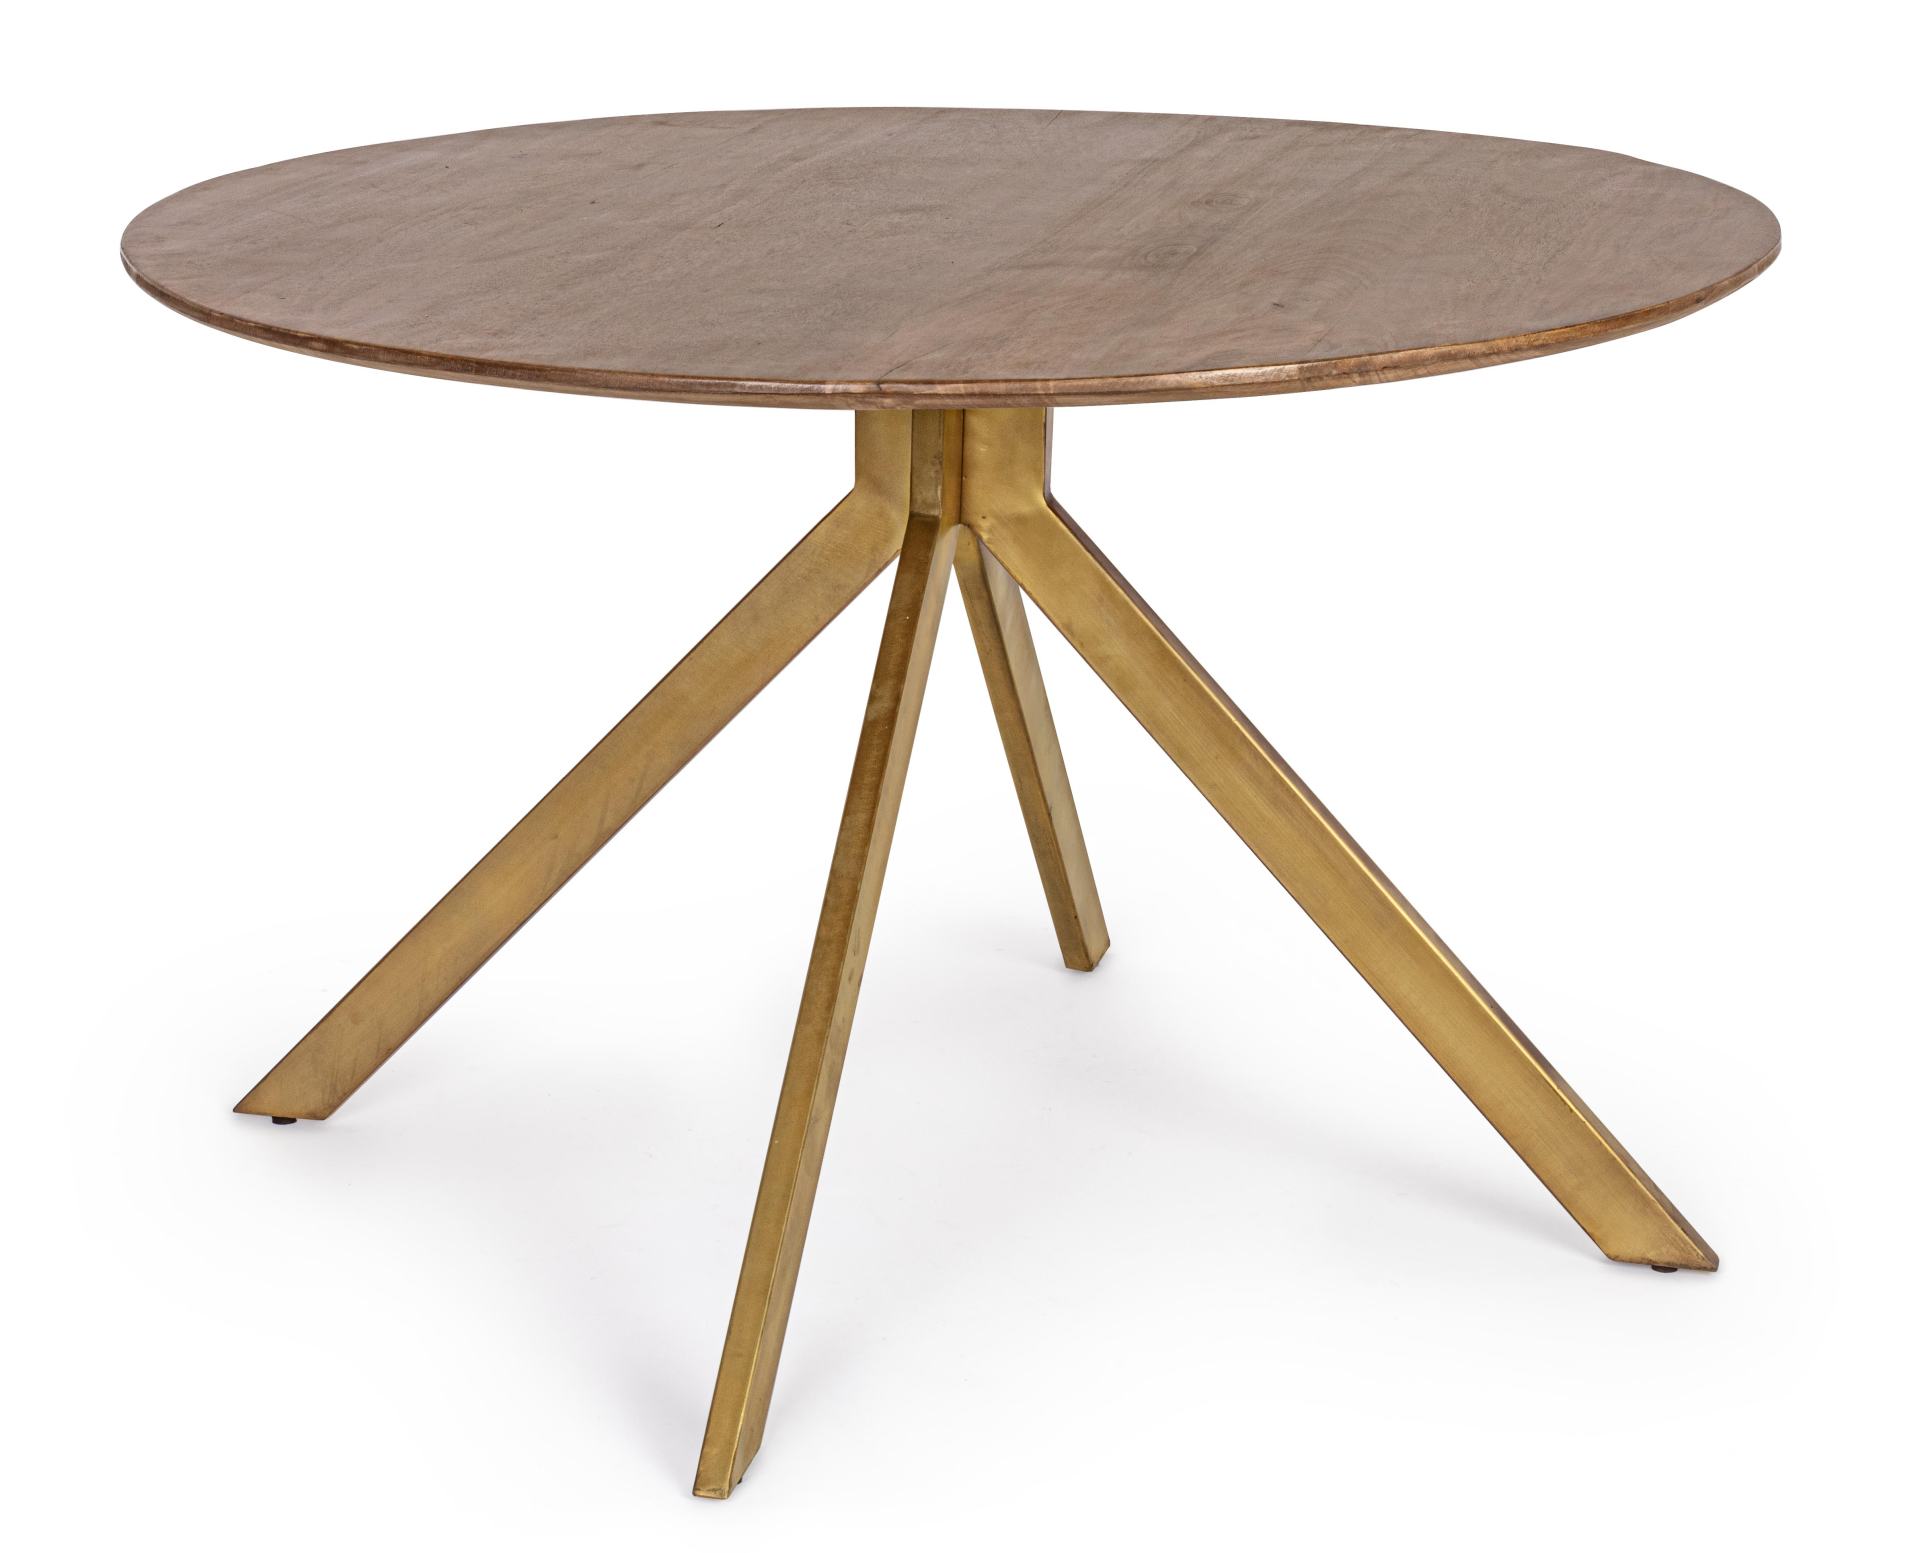 Der Esstisch Sherman überzeugt mit seinem klassischem Design. Gefertigt wurde er aus Mangoholz, welches einen natürlichen Farbton besitzt. Das Gestell ist aus Metall und hat eine goldene Farbe. Das Tisch hat einen Durchmesser von 120 cm.